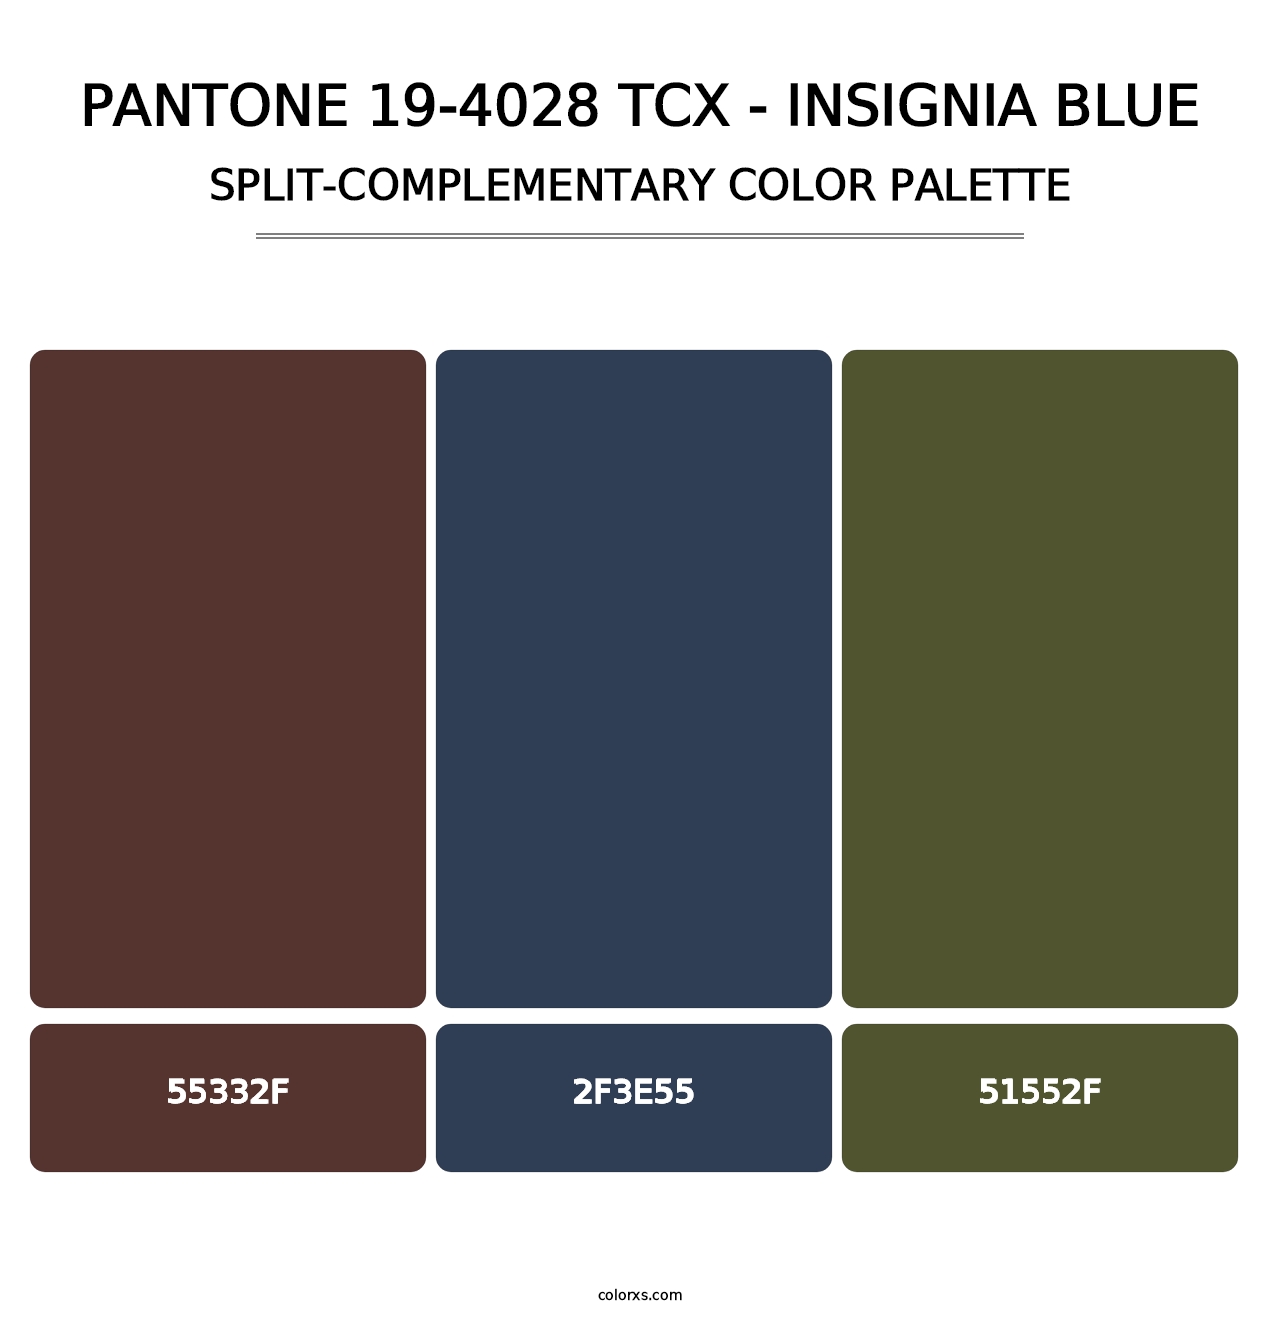 PANTONE 19-4028 TCX - Insignia Blue - Split-Complementary Color Palette